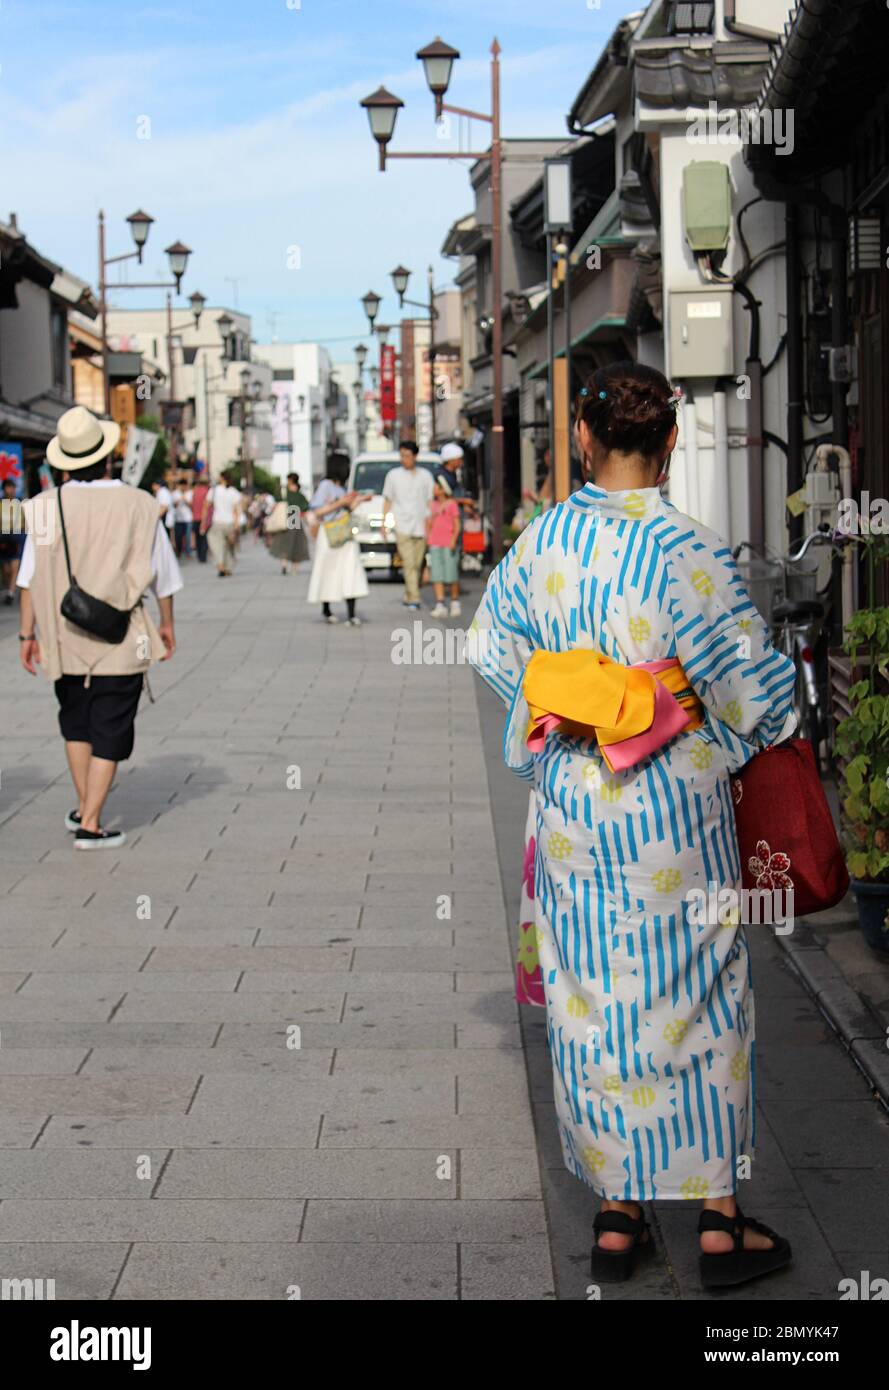 Woman in yukata/kimono walking through streets of Kawagoe, Tokyo Stock Photo